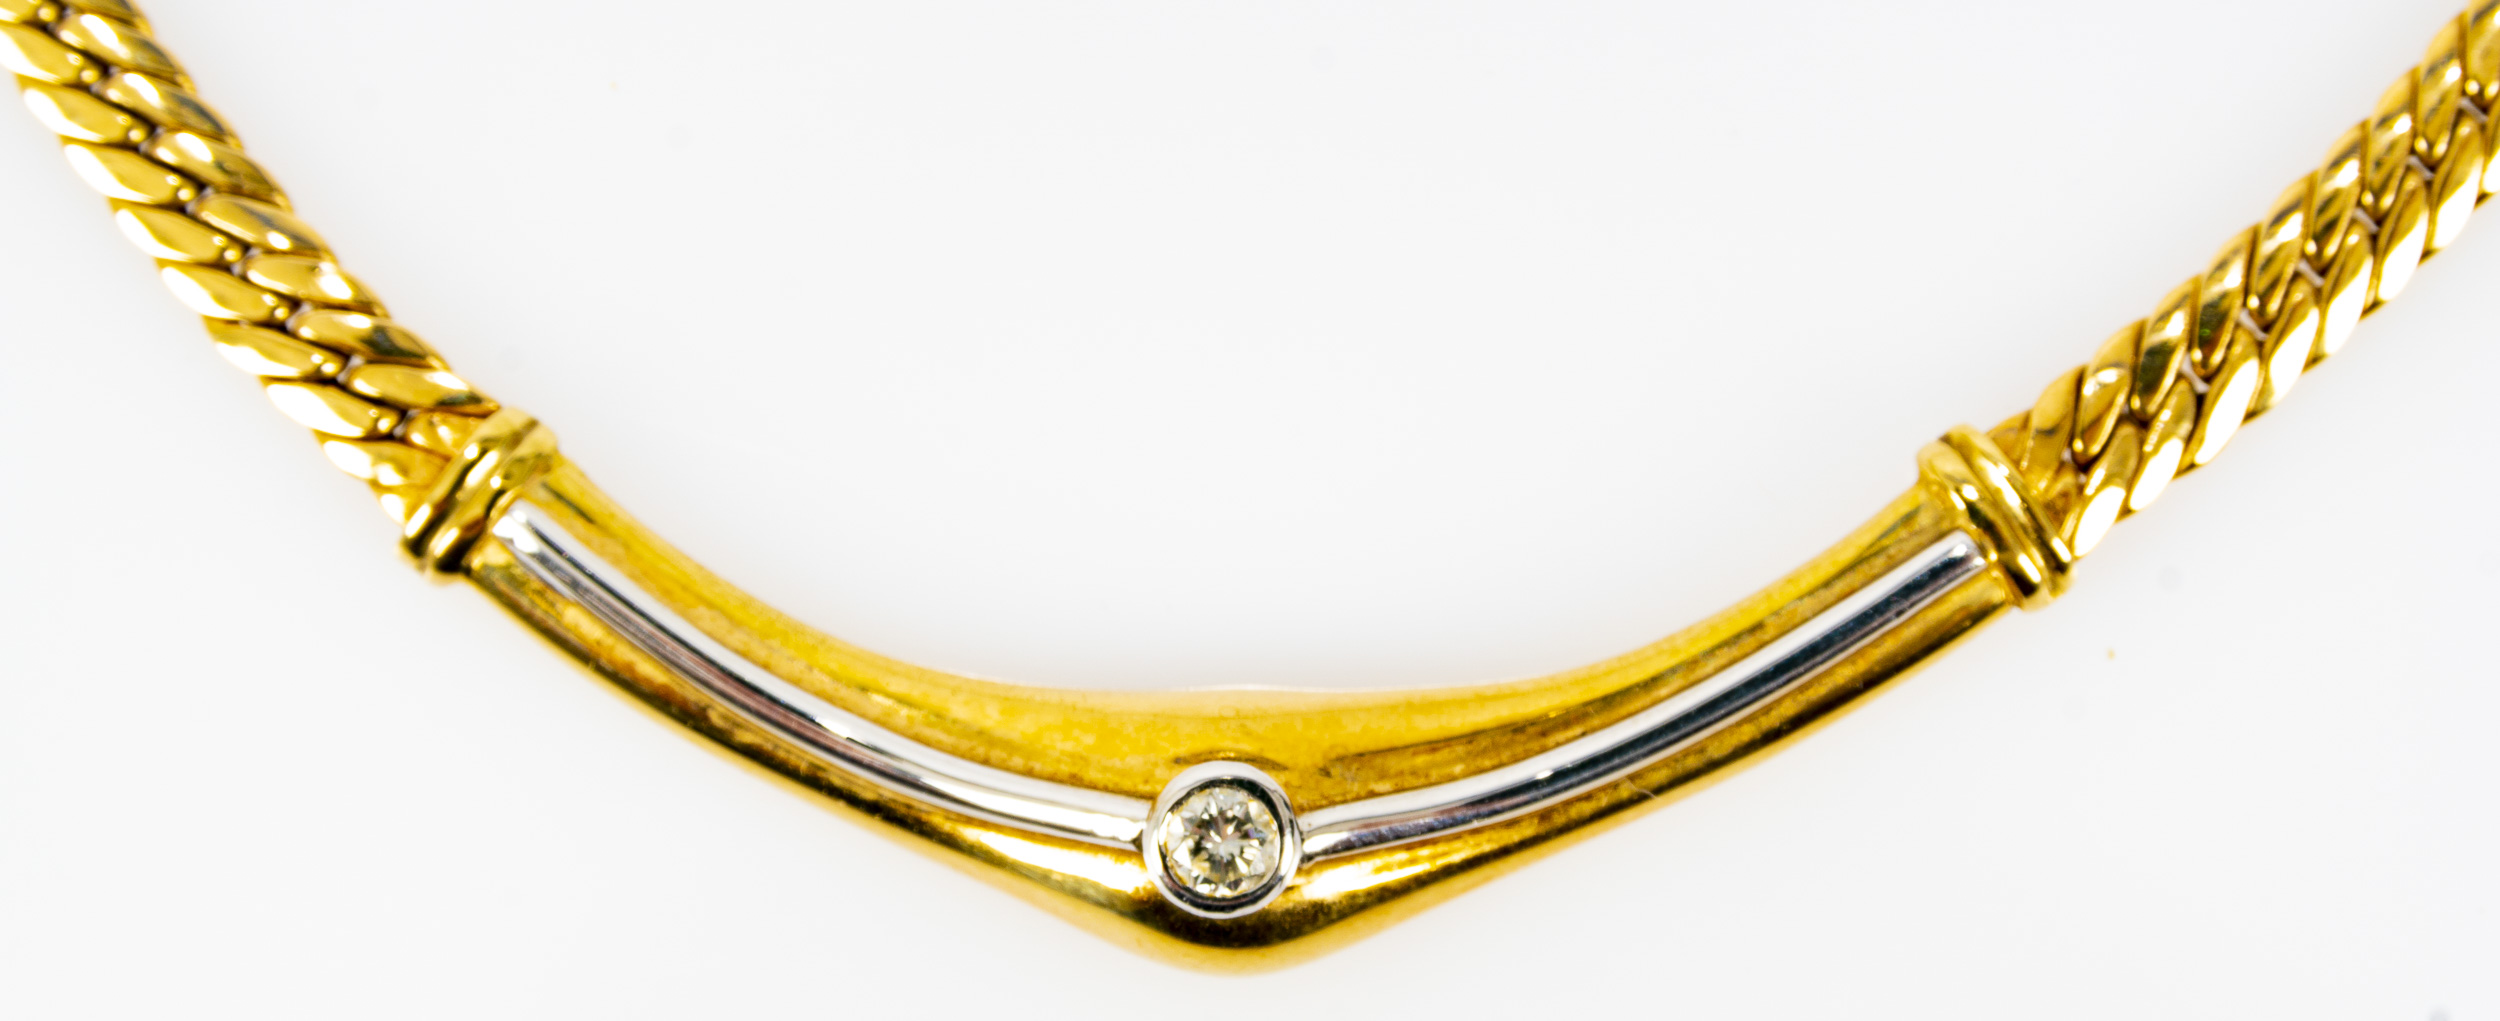 Gliedercollier aus 14 kt. Gelbgold in zeitlos attraktivem Design aus dem Hause "Weiss". Das bogenfö - Image 4 of 10